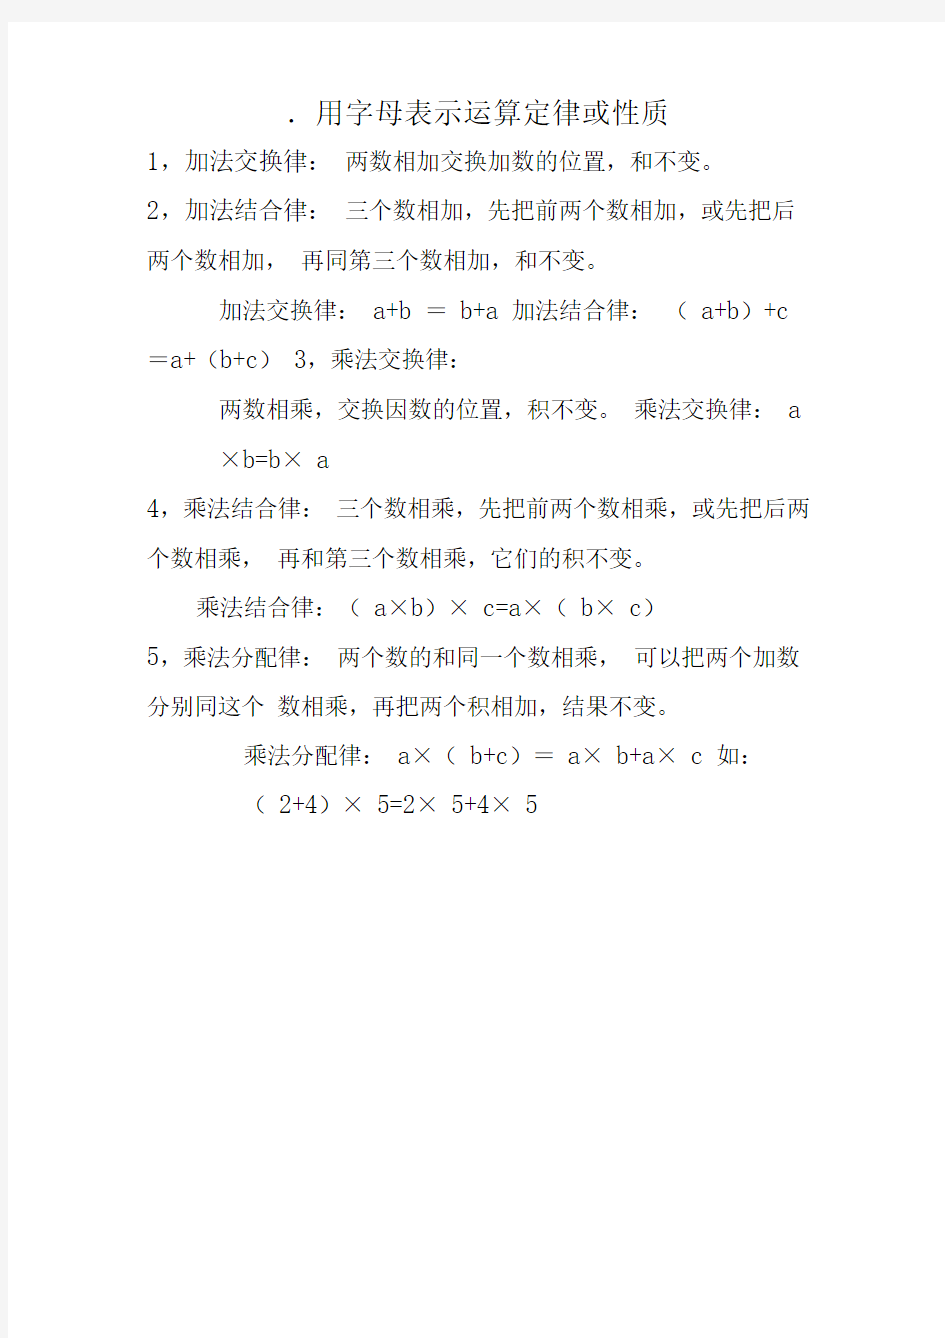 上海沪版小学三年级上下册数学公式(全)